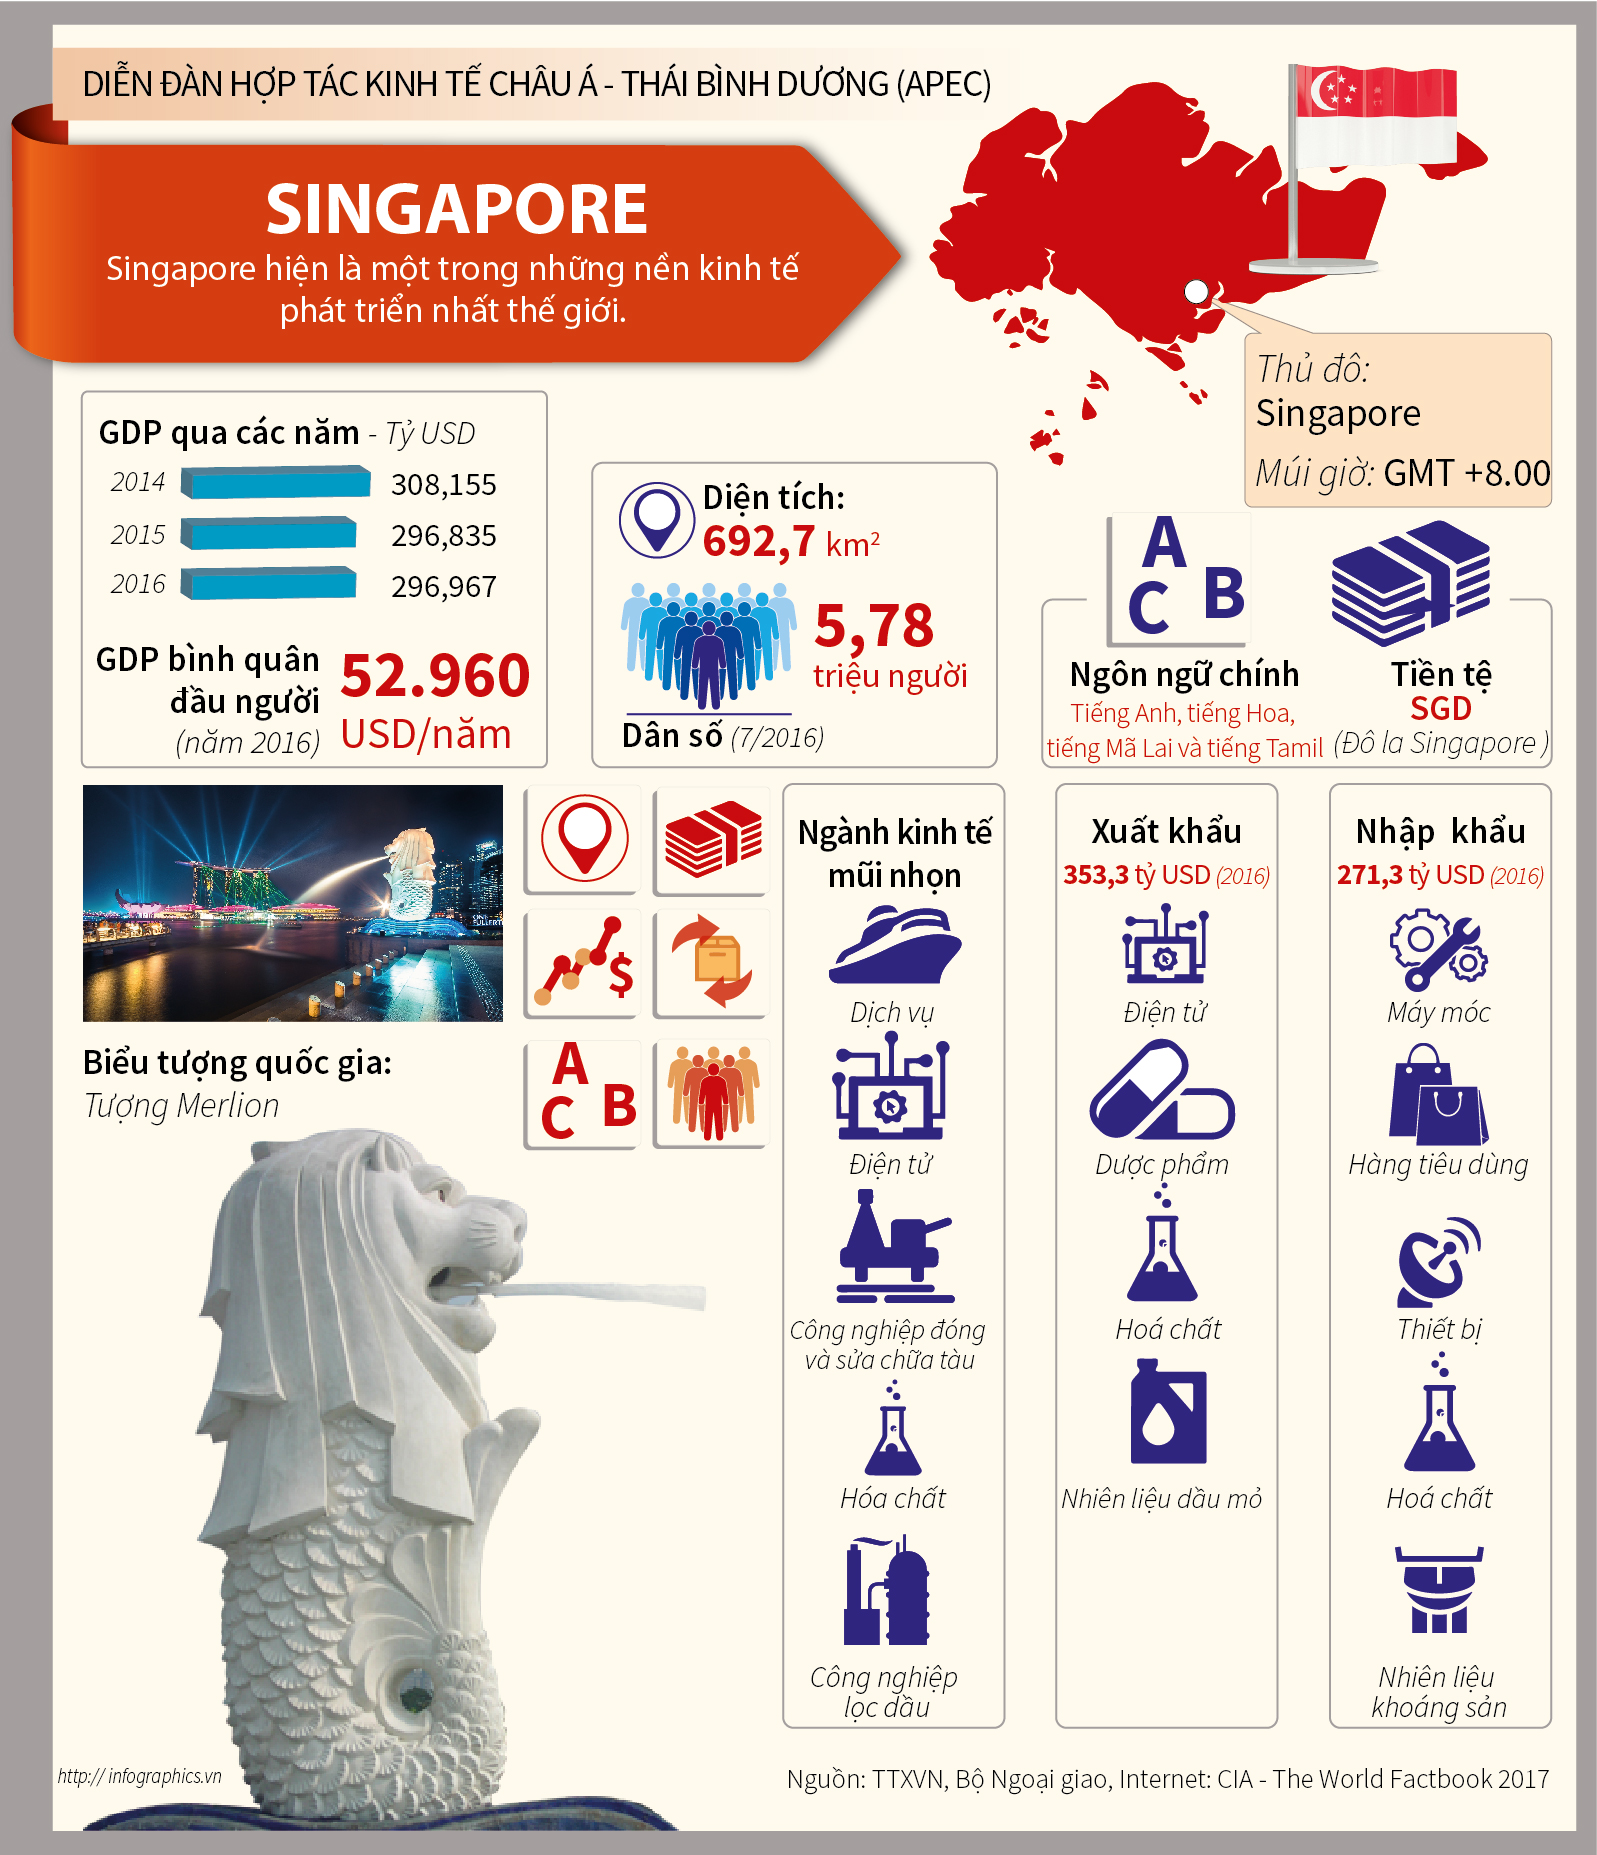 Singapore: Singapore – một đất nước thật tuyệt vời với nền kinh tế phát triển và sự phong phú văn hoá đa dạng. Xem những hình ảnh liên quan để tìm hiểu về cảnh quan độc đáo, các công trình kiến trúc đẹp mắt và phong cách sống tiện nghi ở đảo quốc sư tử.